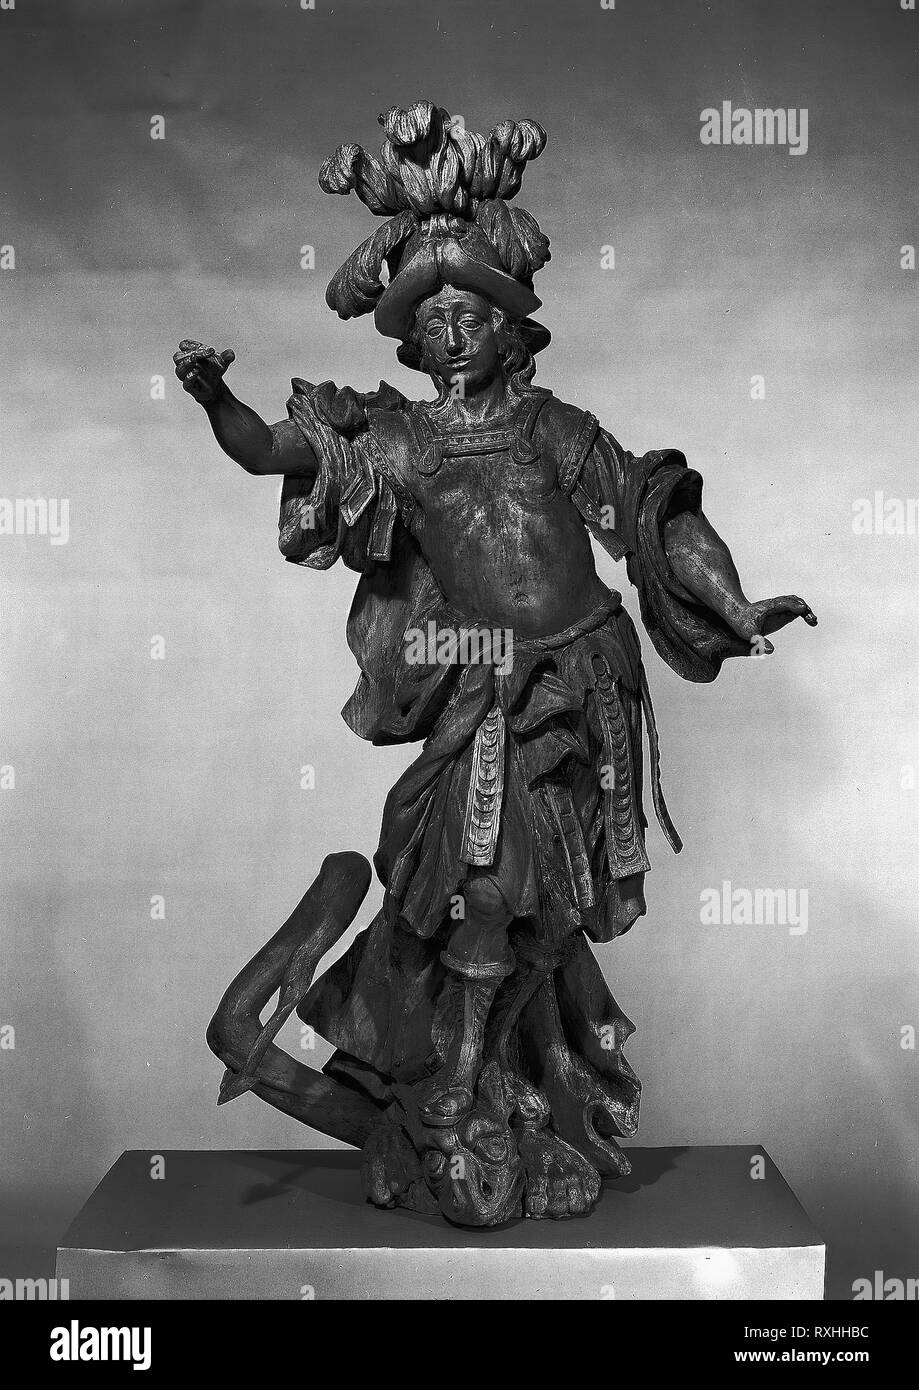 Saint George. Anton Eberhardt; Austrian, active 1760. Date: 1755-1765. Dimensions: 48 × 35 in. (121.9 × 88.9 cm). Lindenwood. Origin: Austria. Museum: The Chicago Art Institute. Stock Photo